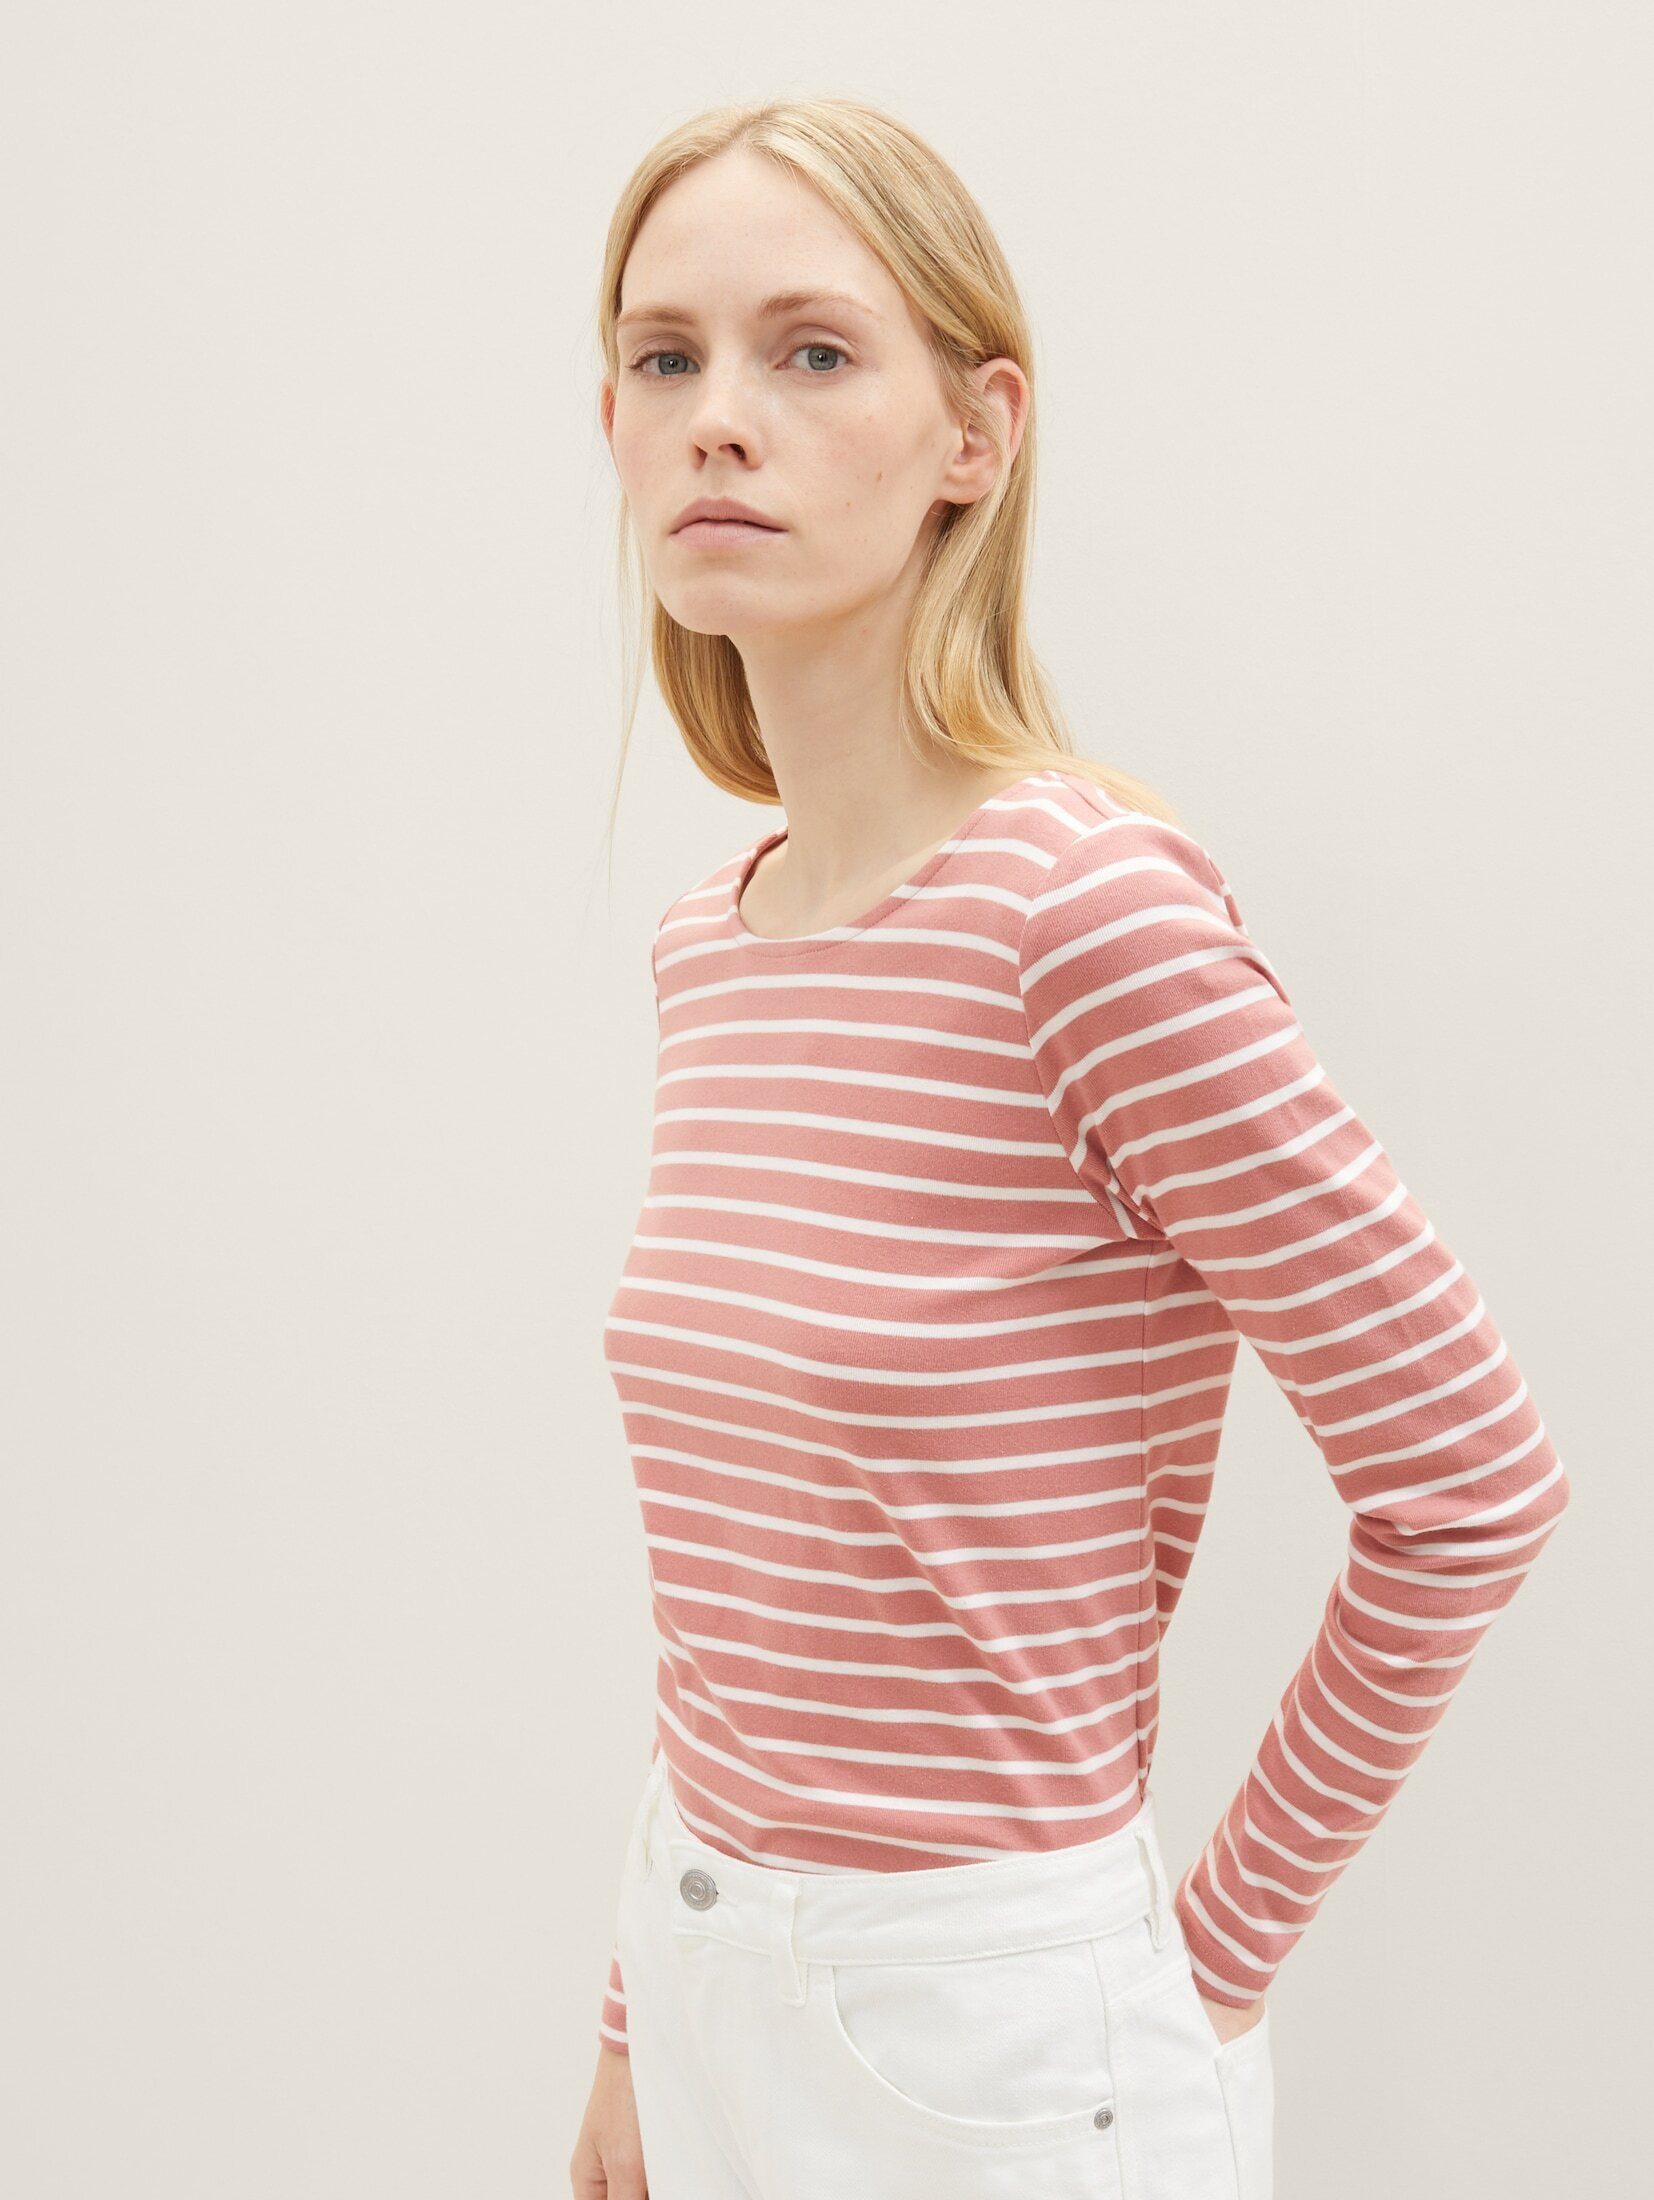 TOM TAILOR T-Shirt Langarmshirt Streifenmuster offwhite mit rose stripe